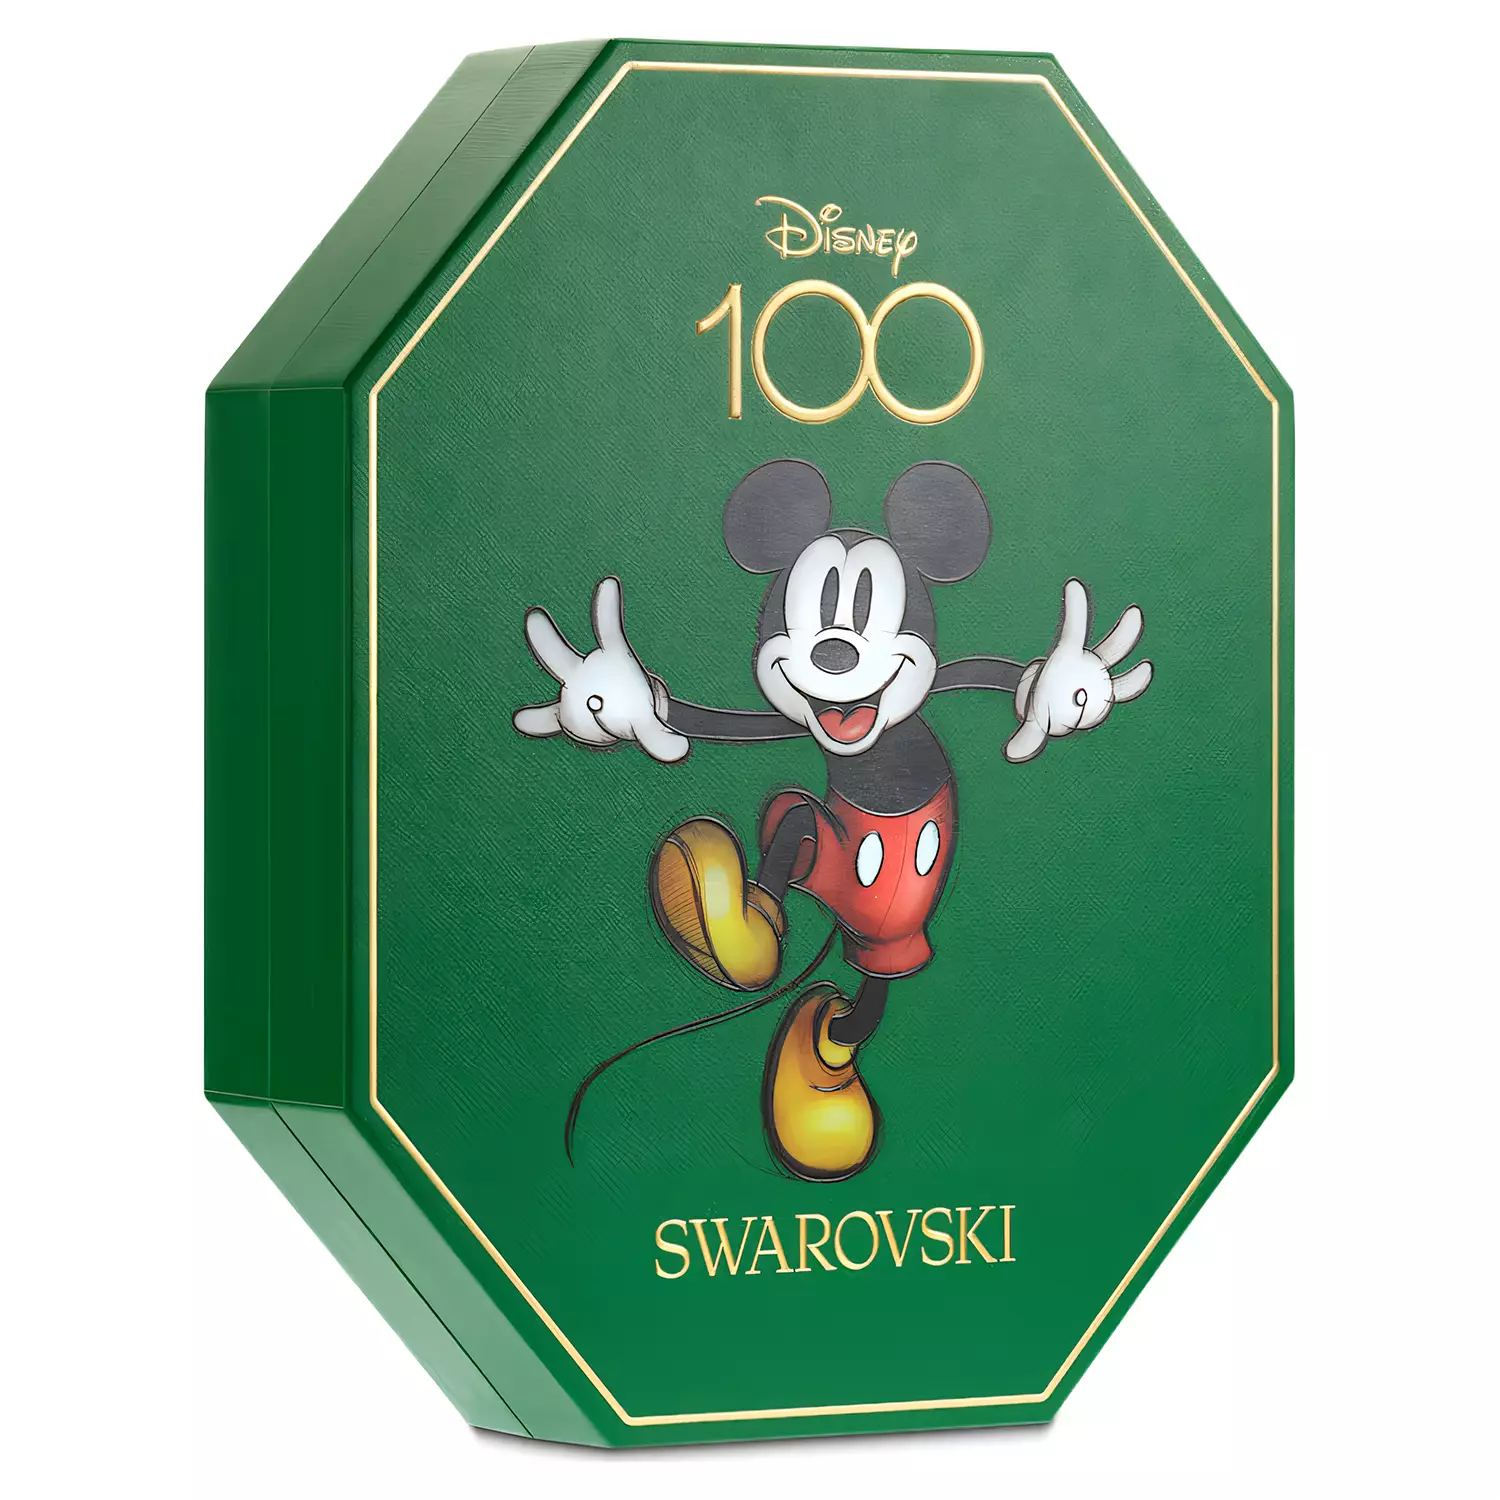 La magie est au rendez-vous avec le calendrier de l'Avent de Swarovski pour le 100e anniversaire de Disney